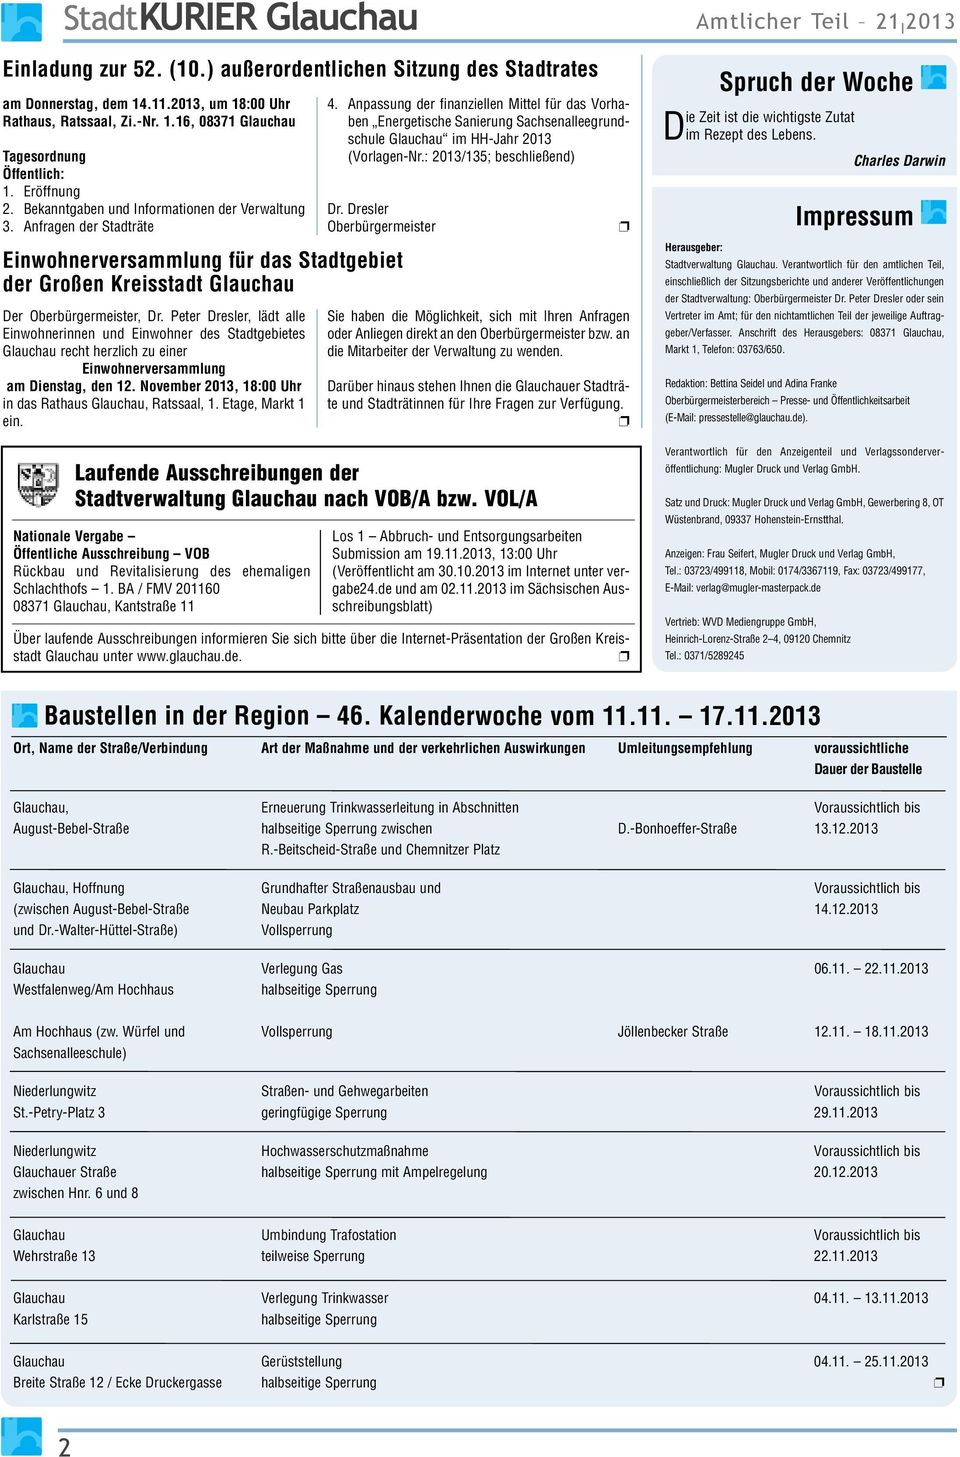 VOL/A Nationale Vergabe Öffentliche Ausschreibung VOB Rückbau und Revitalisierung des ehemaligen Schlachthofs 1. BA / FMV 201160 08371 Glauchau, Kantstraße 11 4.